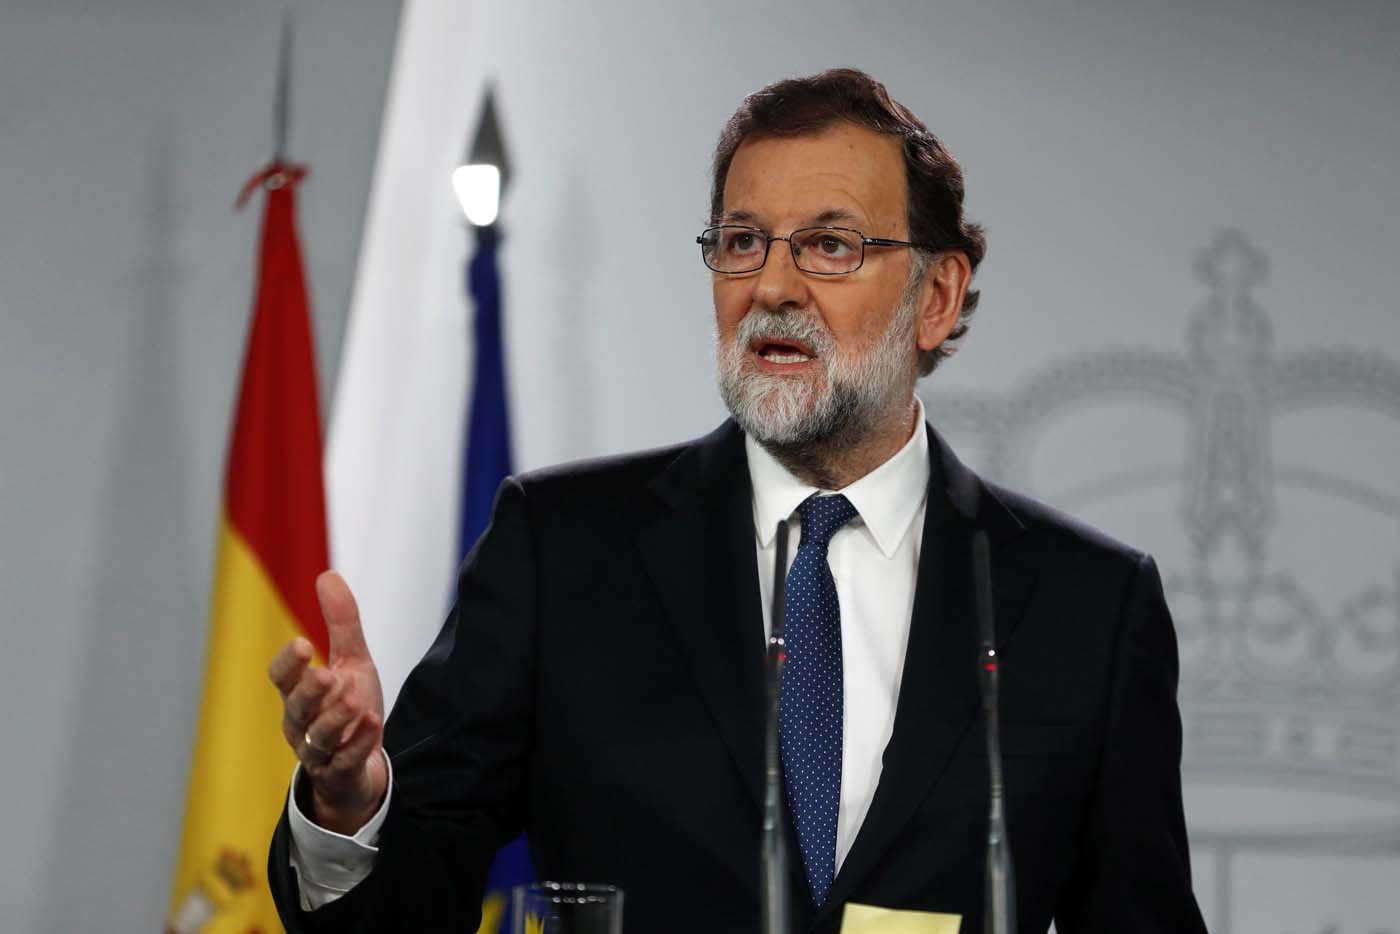 Rajoy promete diálogo “con todos” tras las elecciones en Cataluña